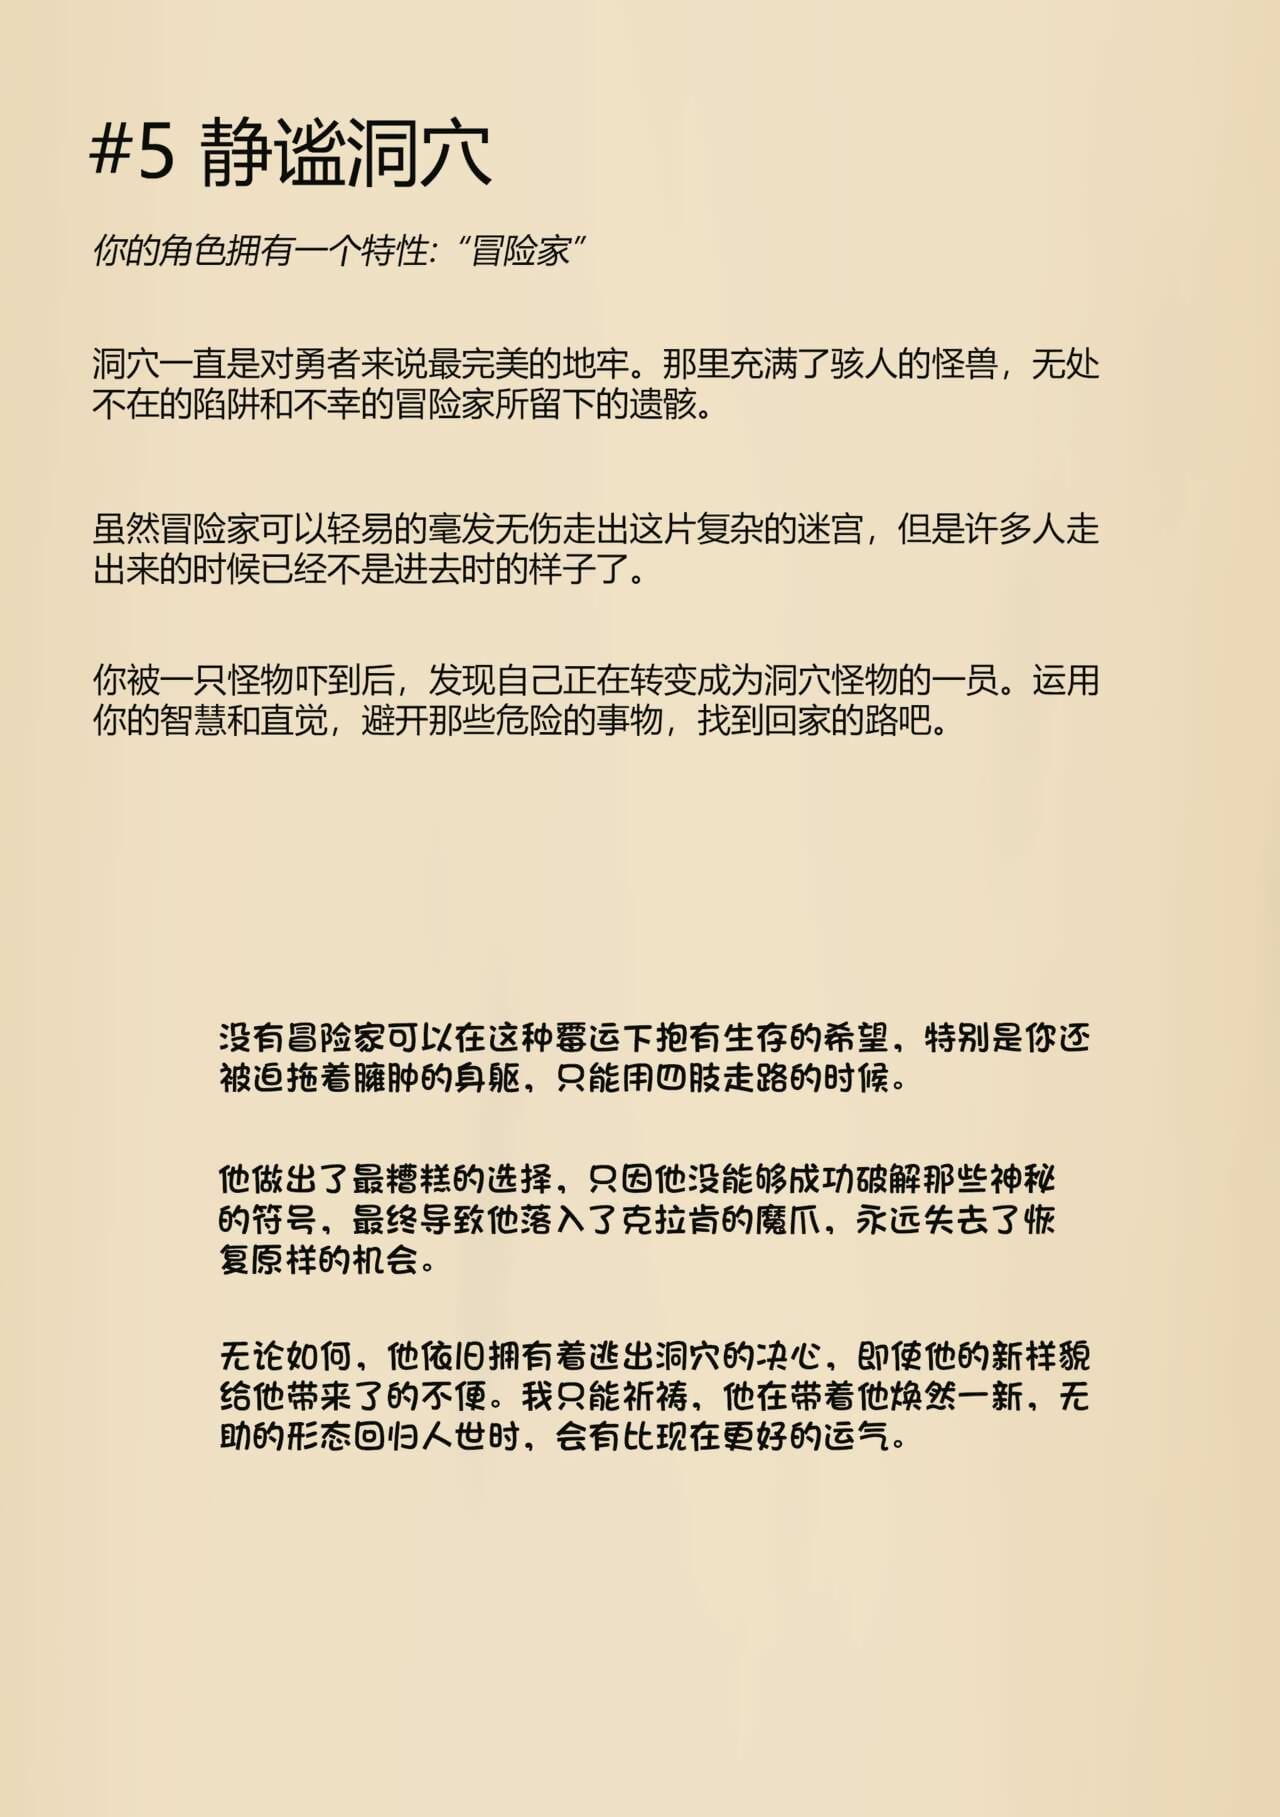 sa_no trpg الطبعة الصينية 梅水瓶汉化